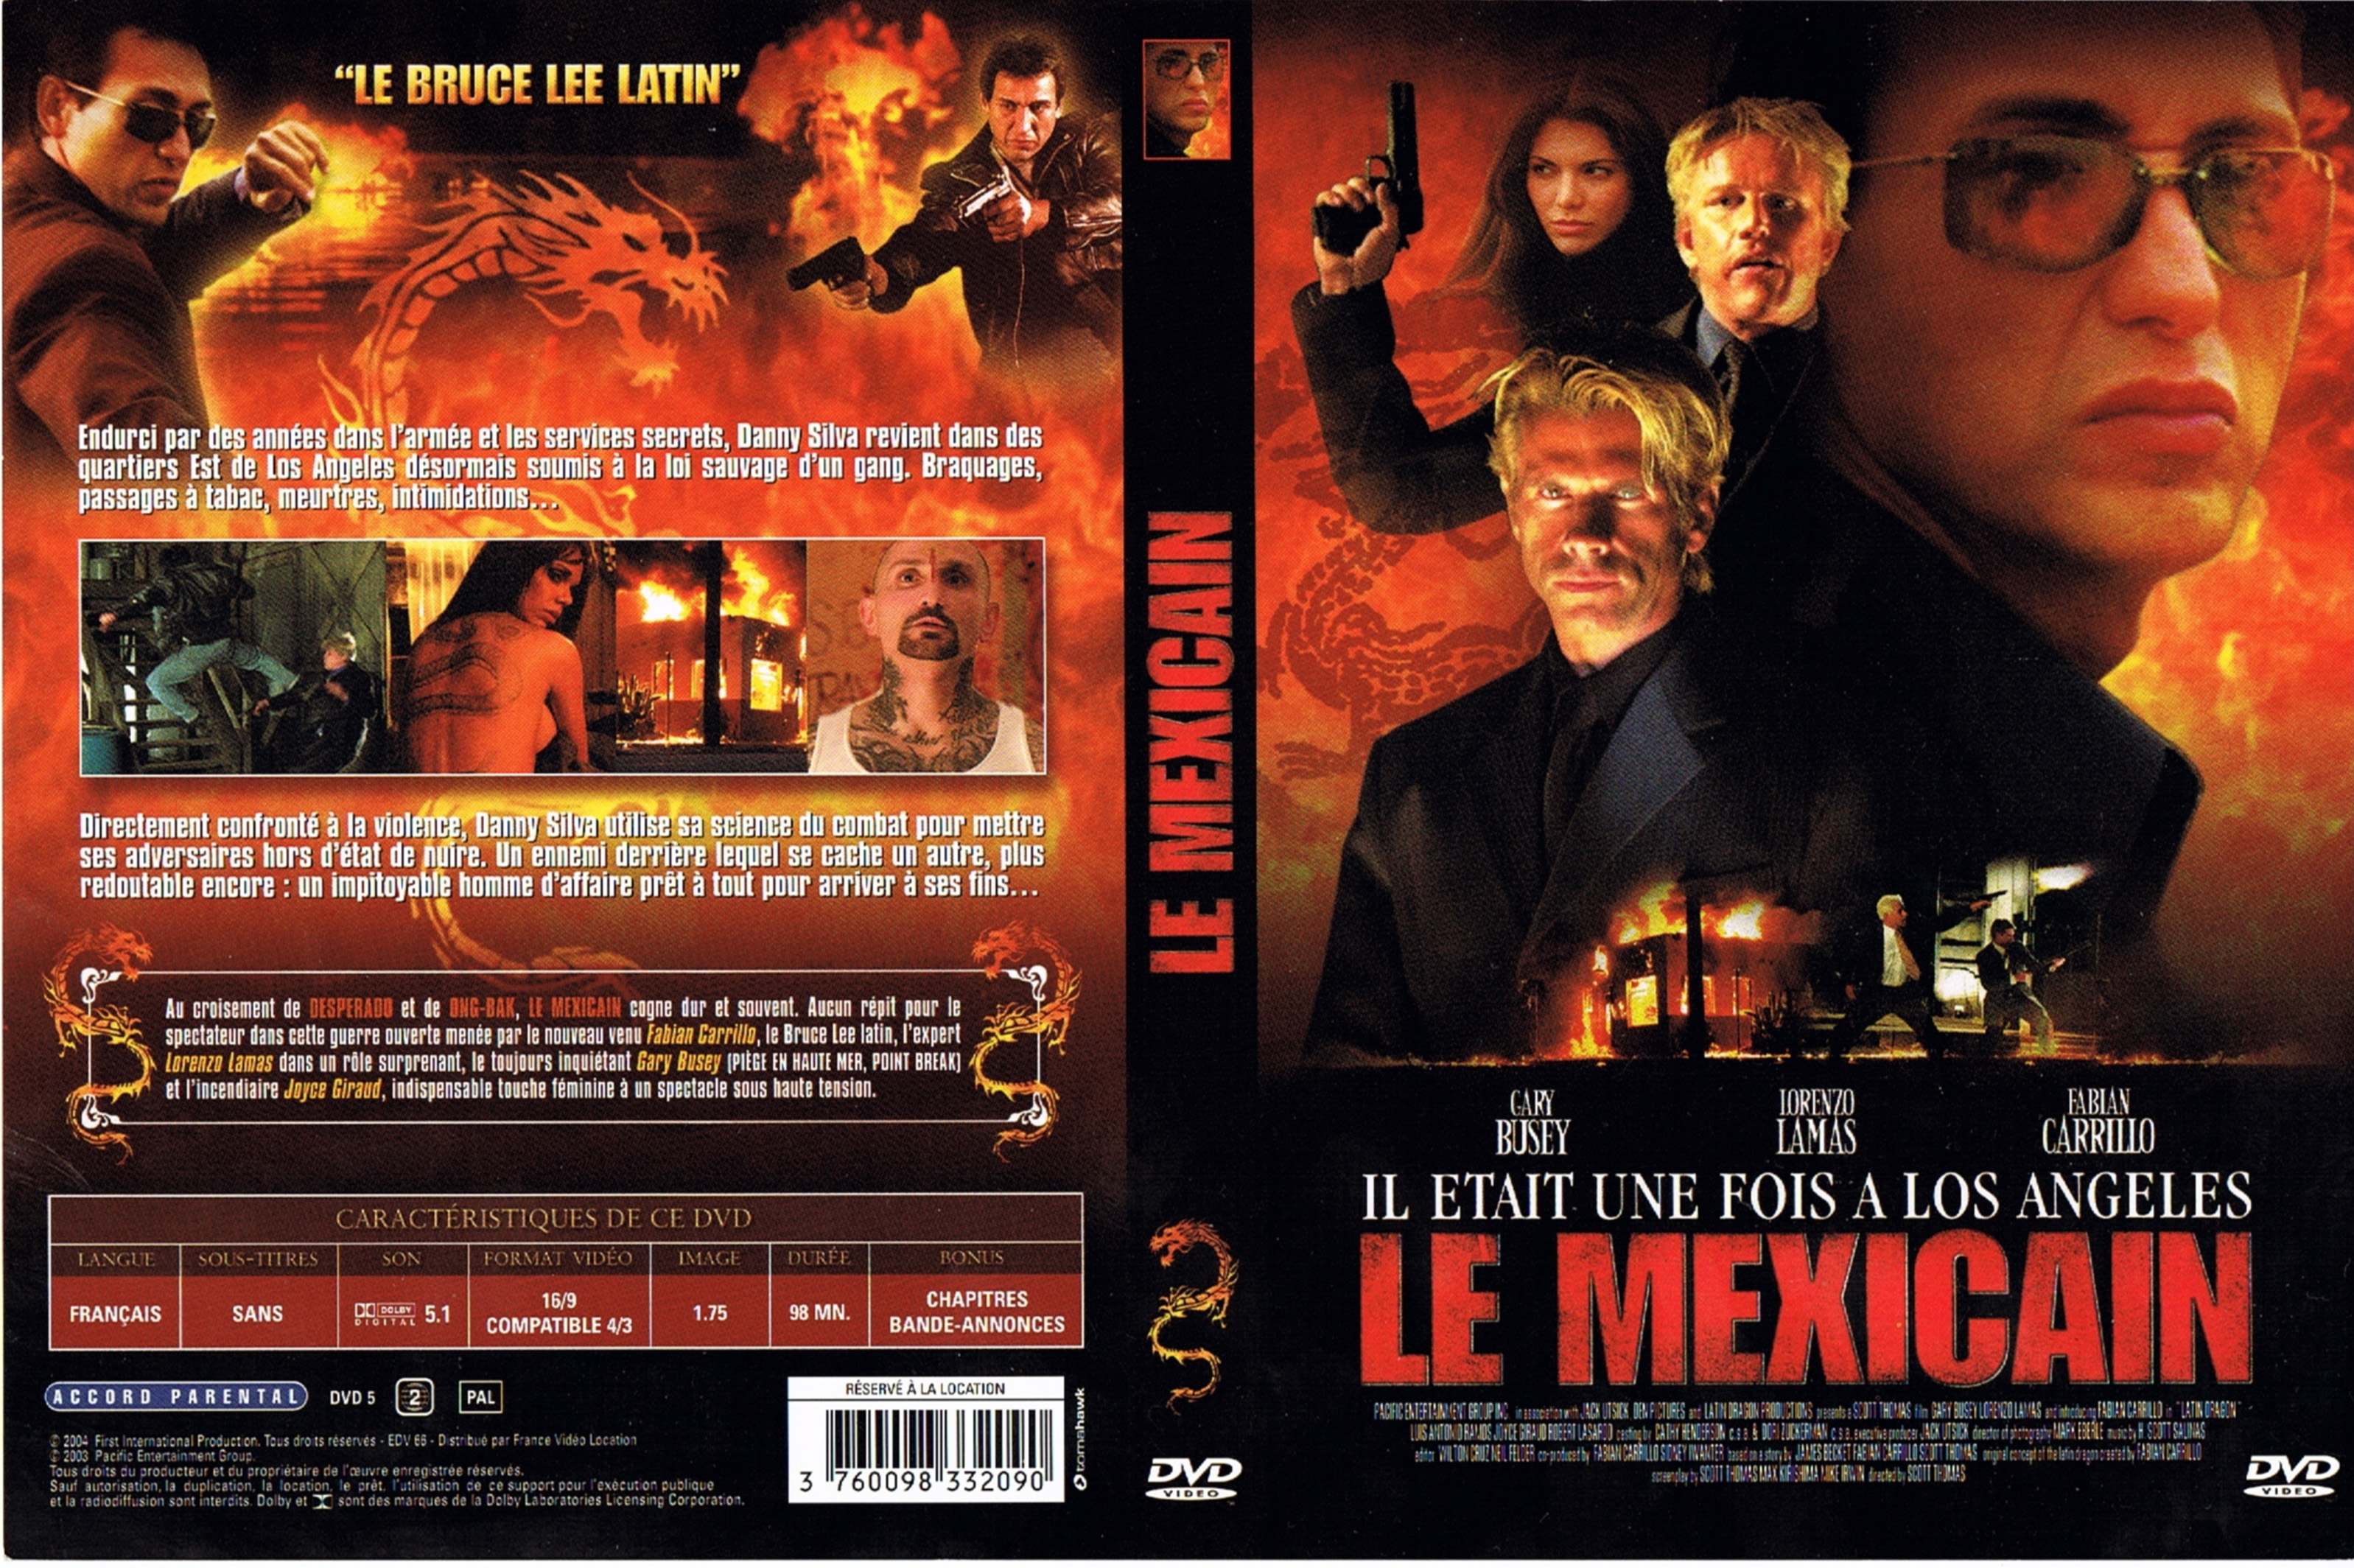 Jaquette DVD Le mexicain (2004)